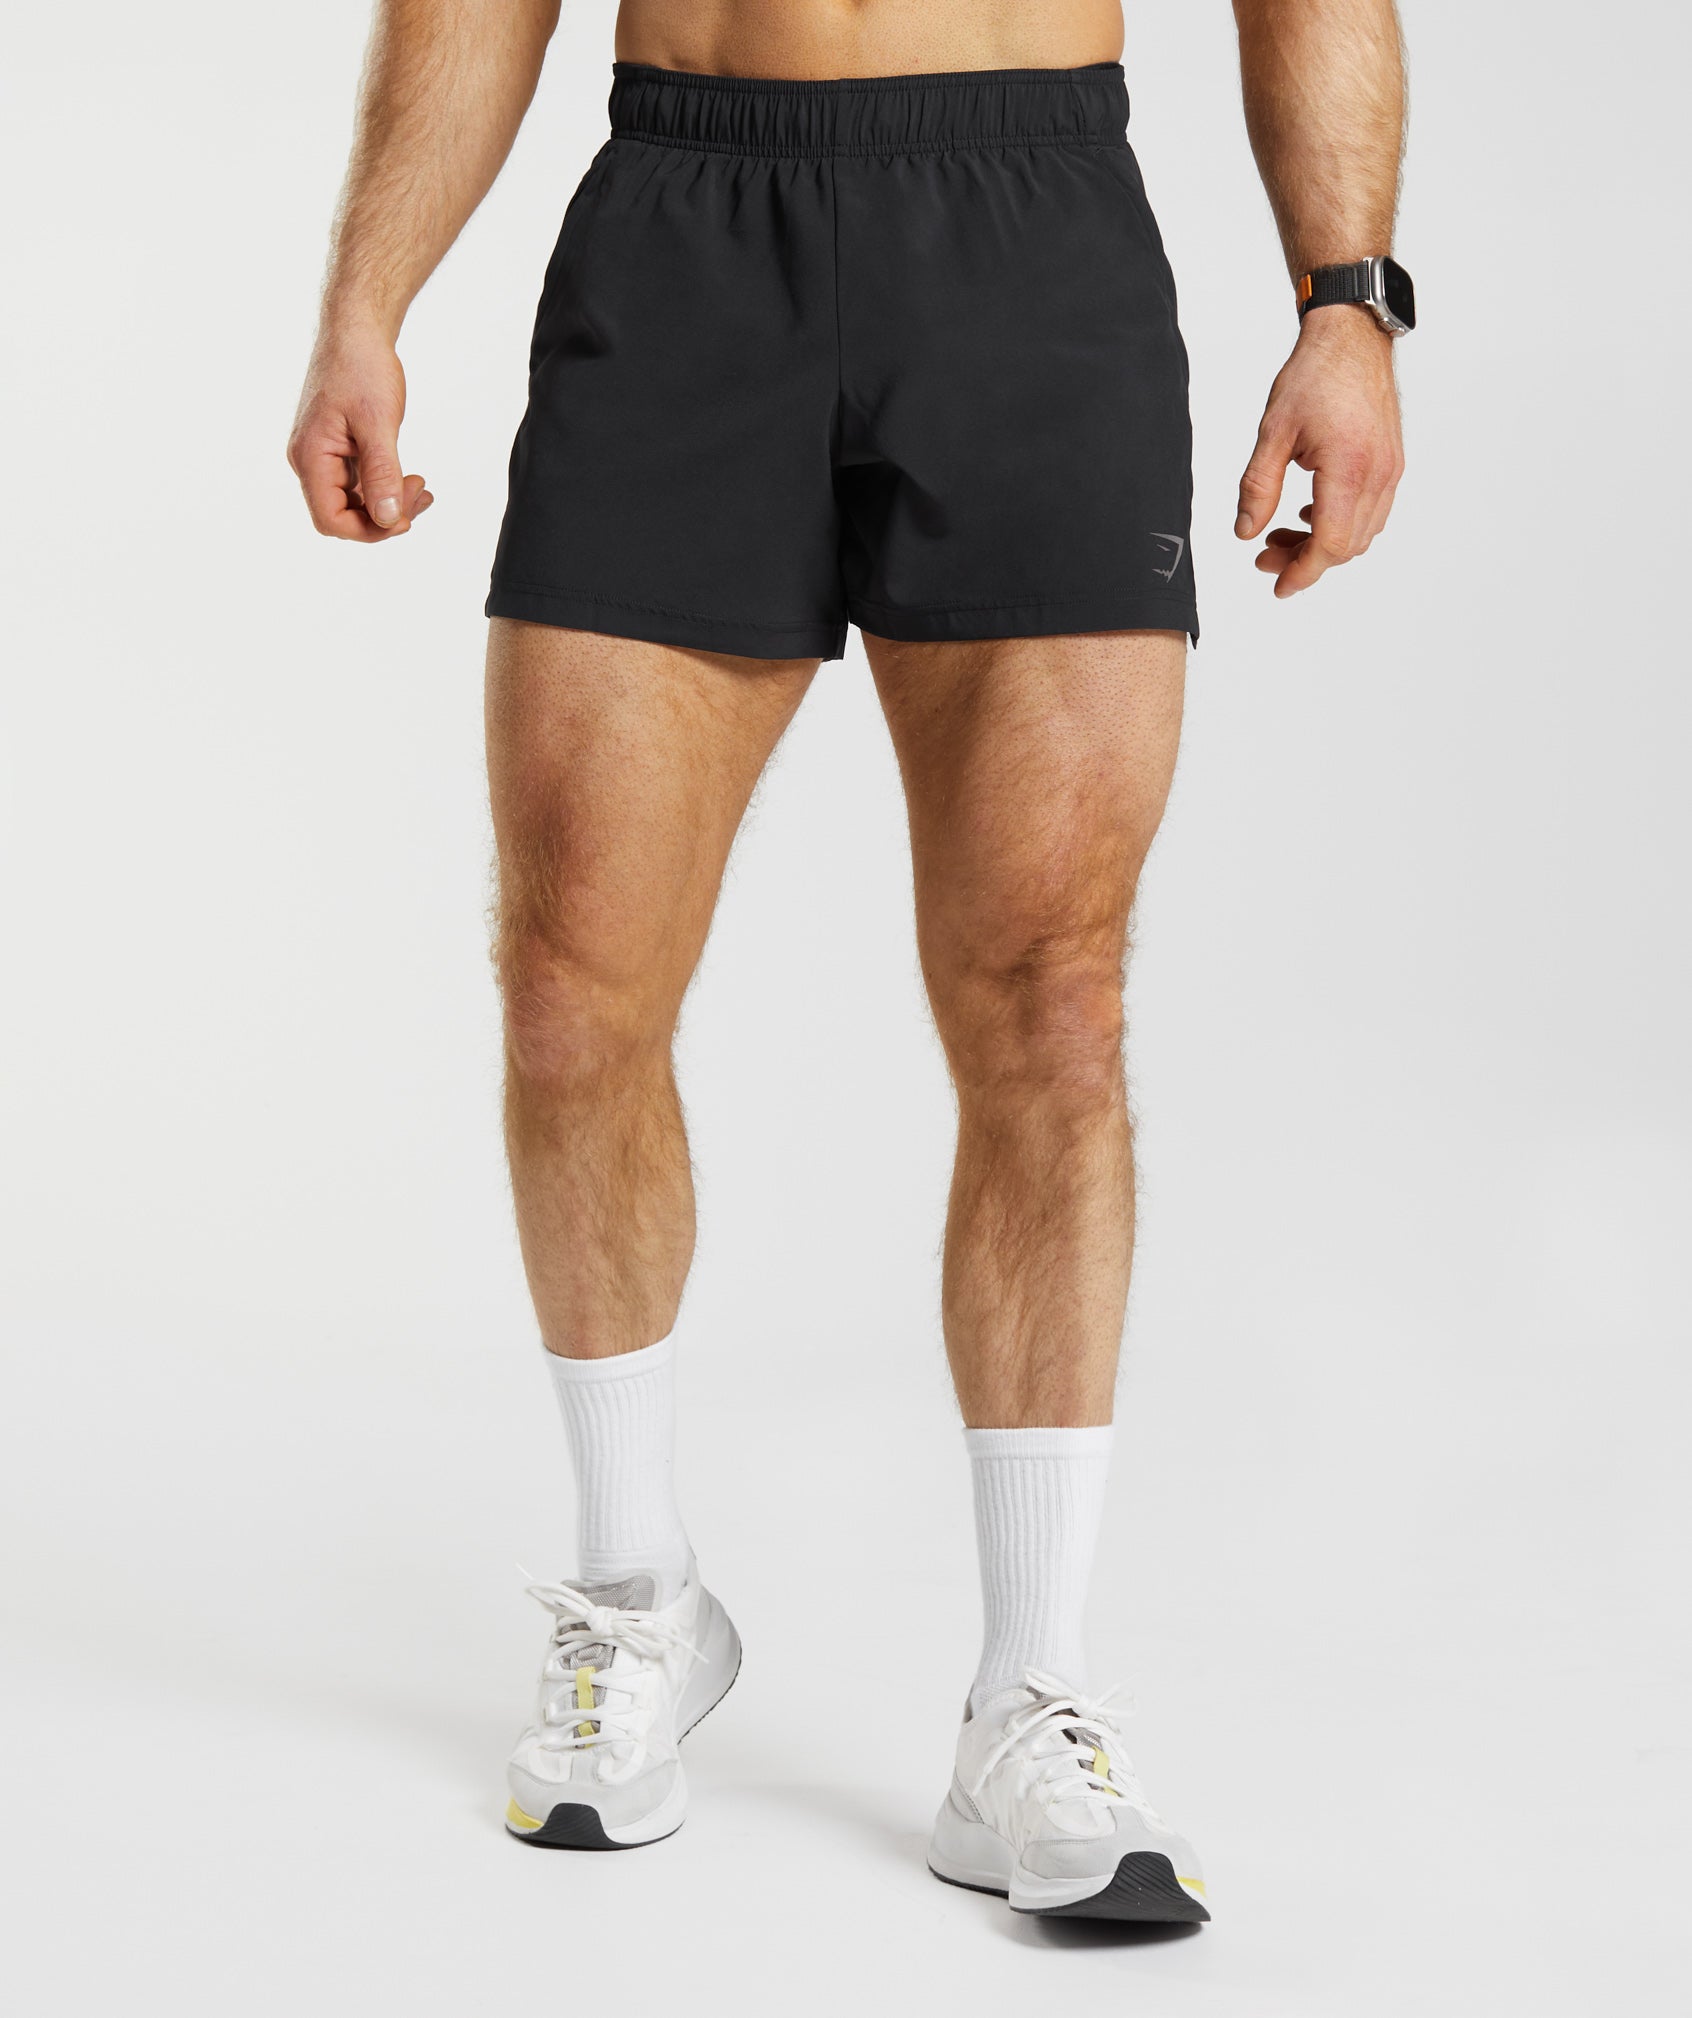 Men's Gym Shorts, Men's Gym Clothes, Workout Shorts